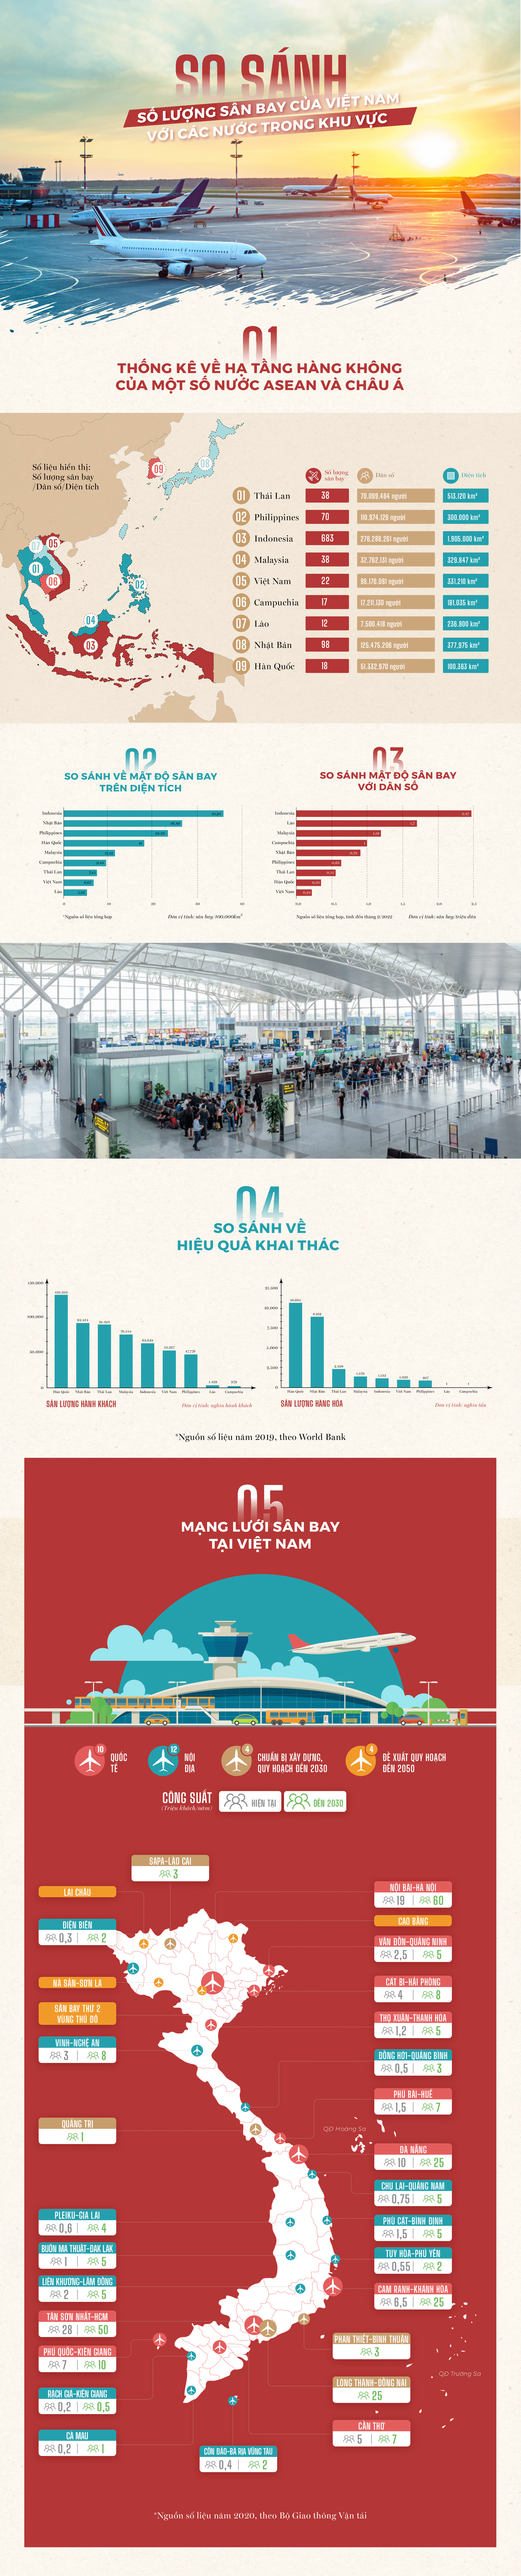 [Infographic] So sánh số lượng sân bay của Việt Nam với các nước trong khu vực - Ảnh 1